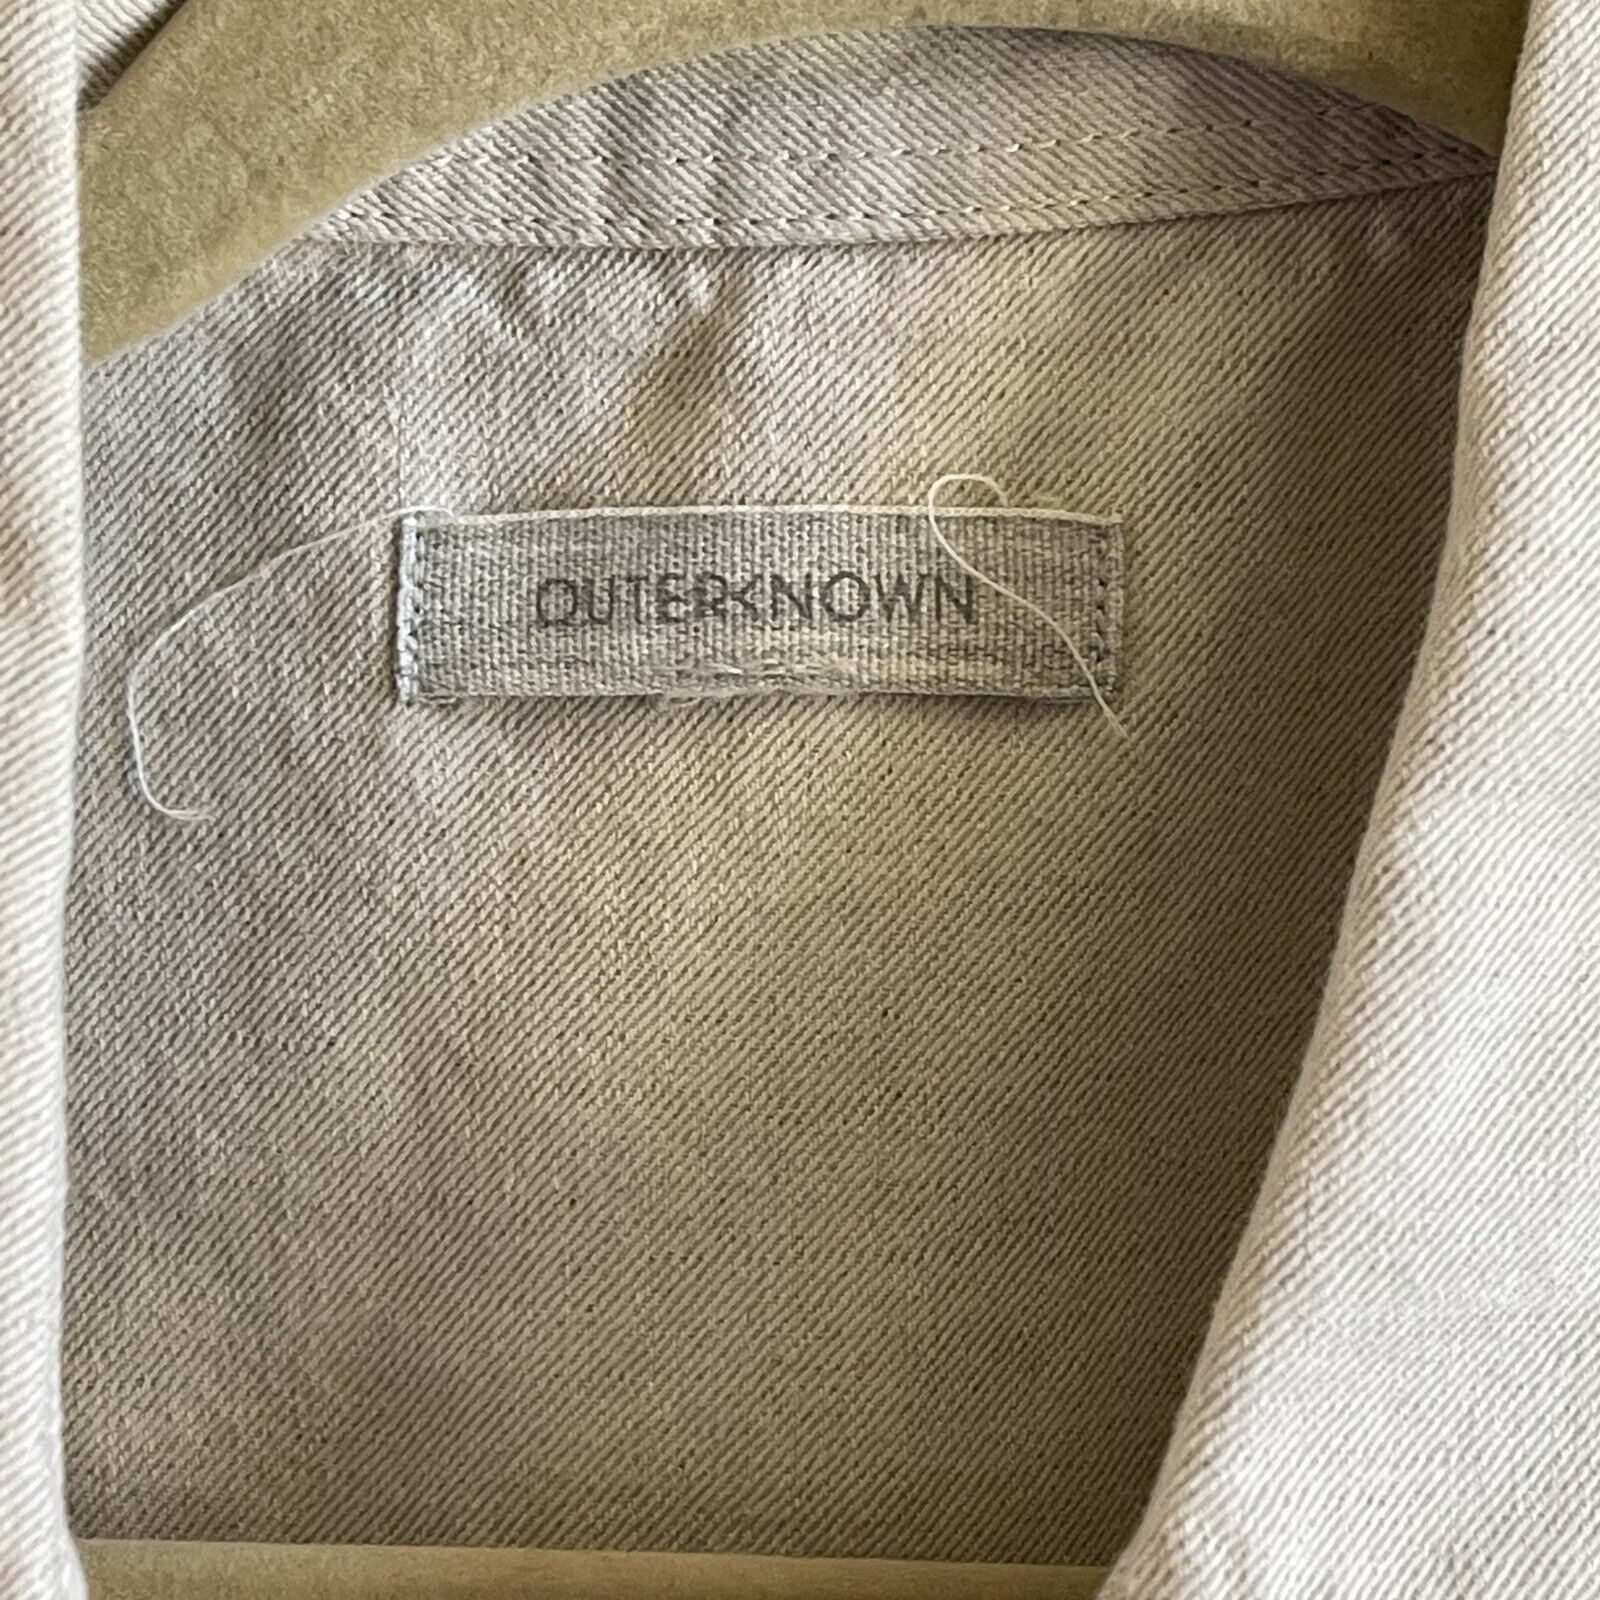 Outerknown Short Cotton Linen Jumpsuit Romper Xs - image 4